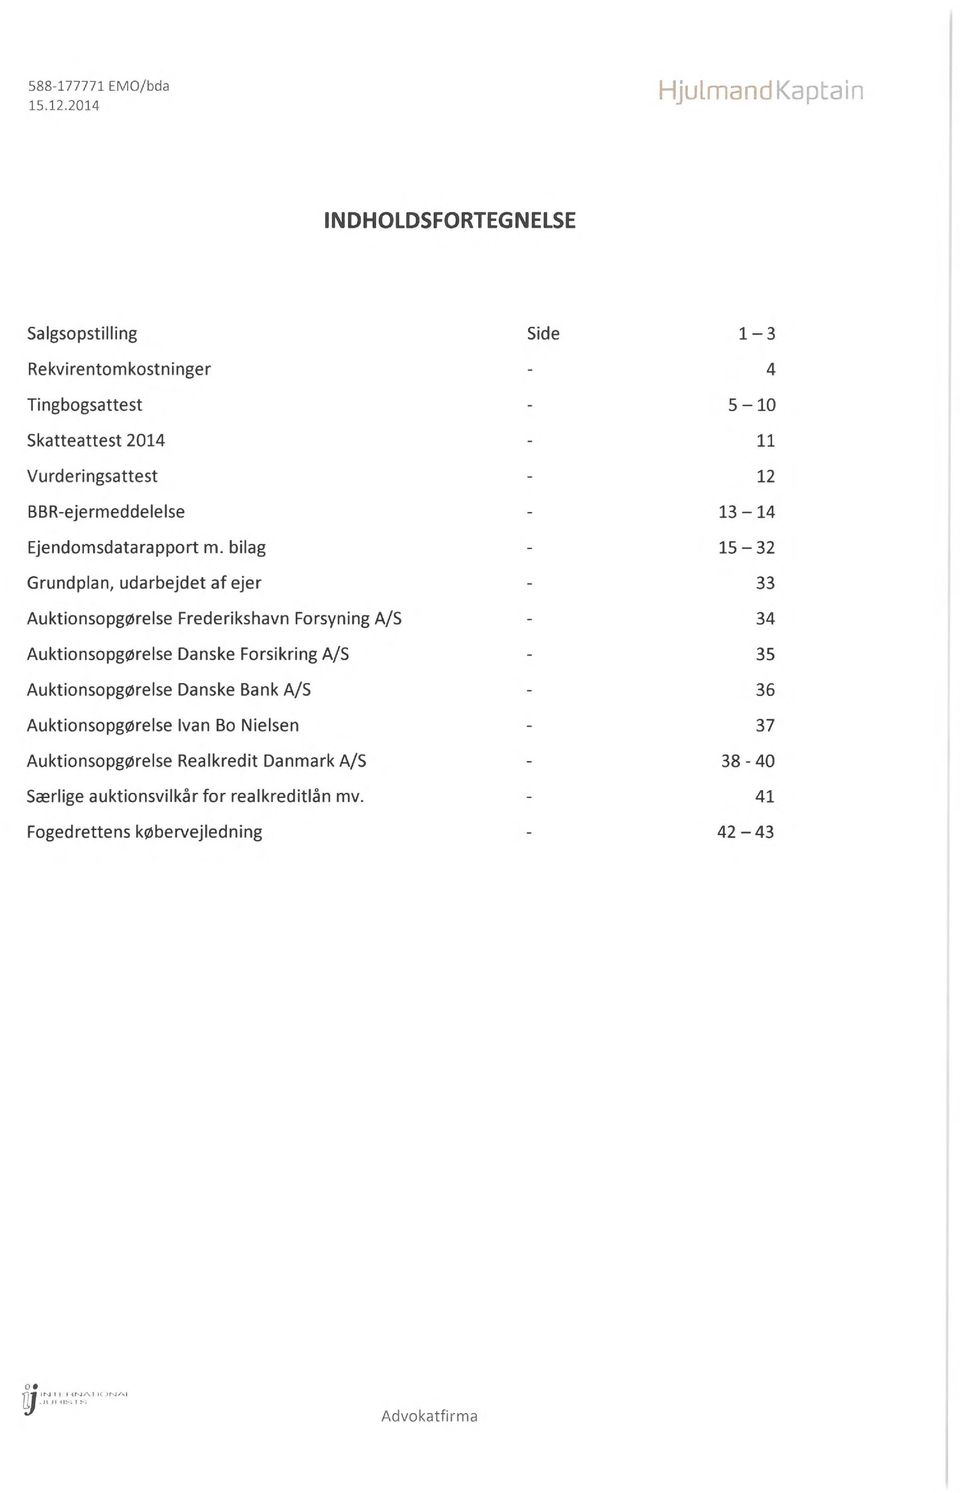 BBR-ejermeddelelse - 13 14 Ejendomsdata rapport m.